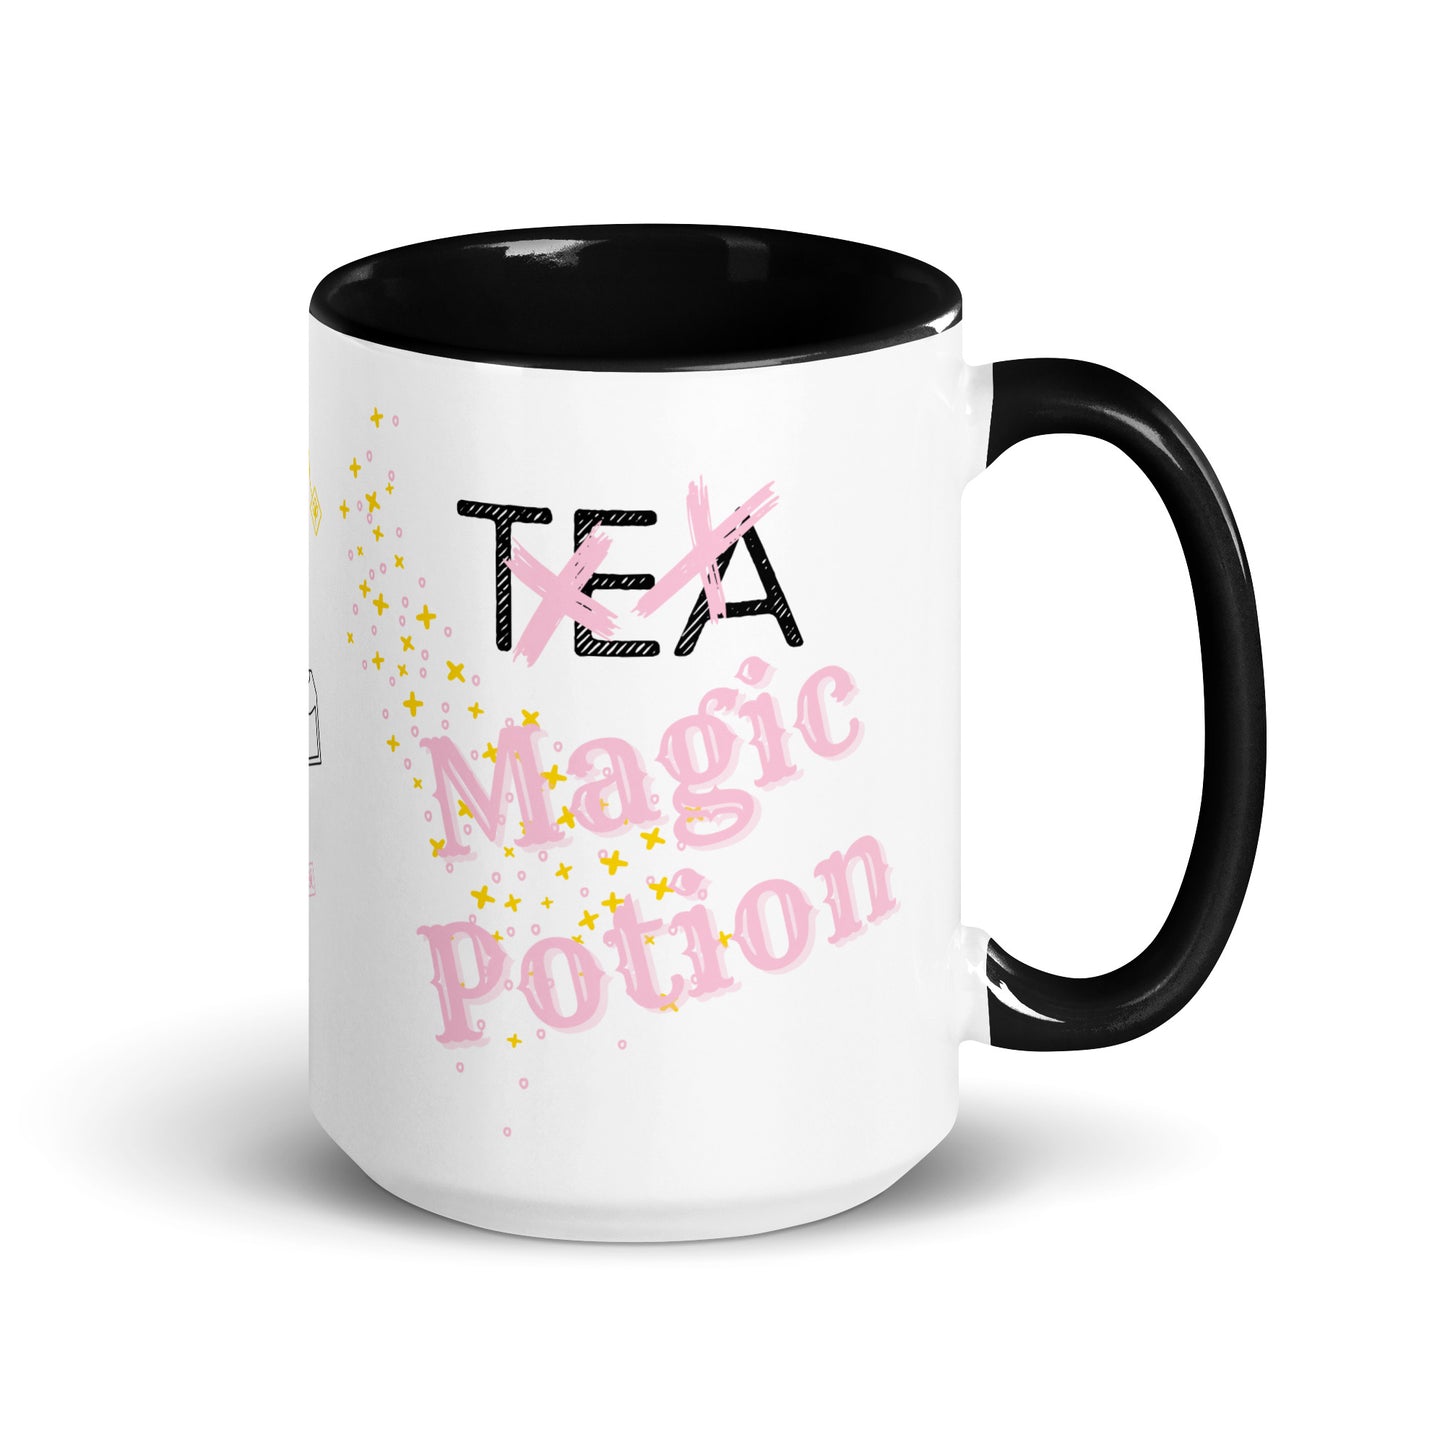 Halloween Magic Potion Mug with Black handle and inside | Tea | 15oz.